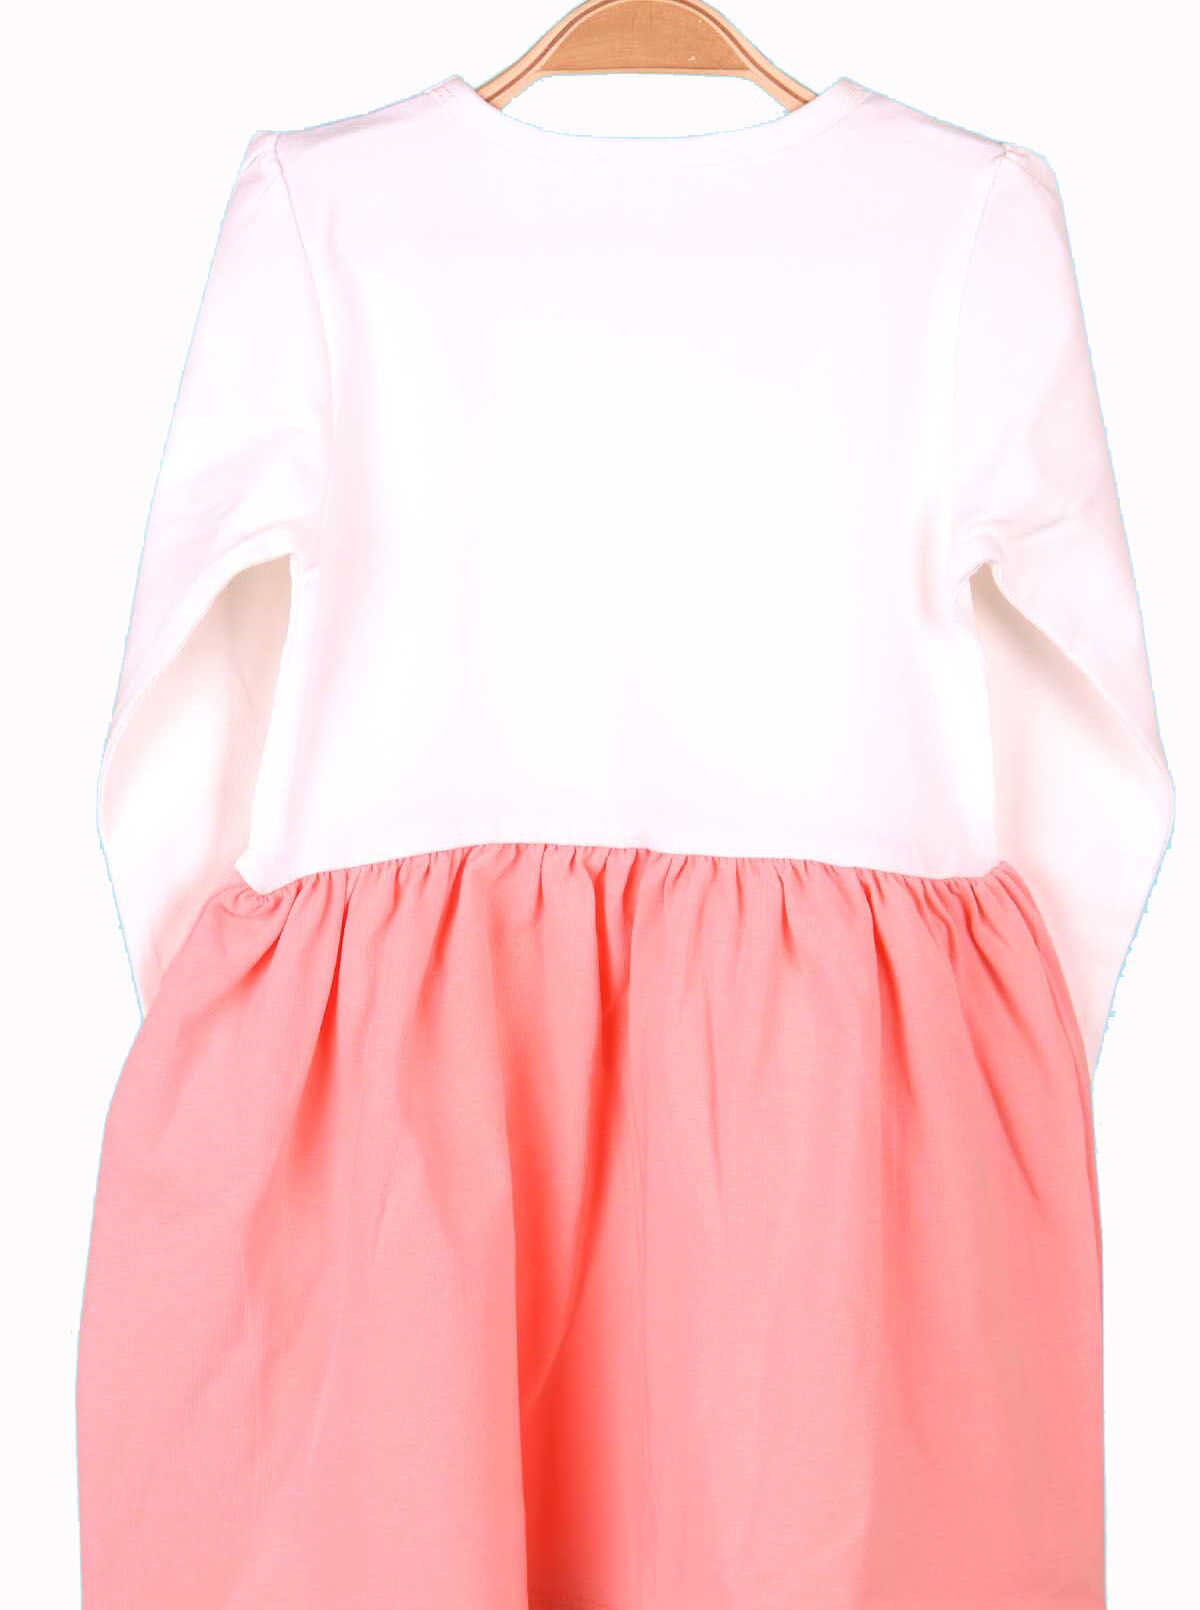 Платье для девочки Breeze Единорог розовое 14983 - размеры